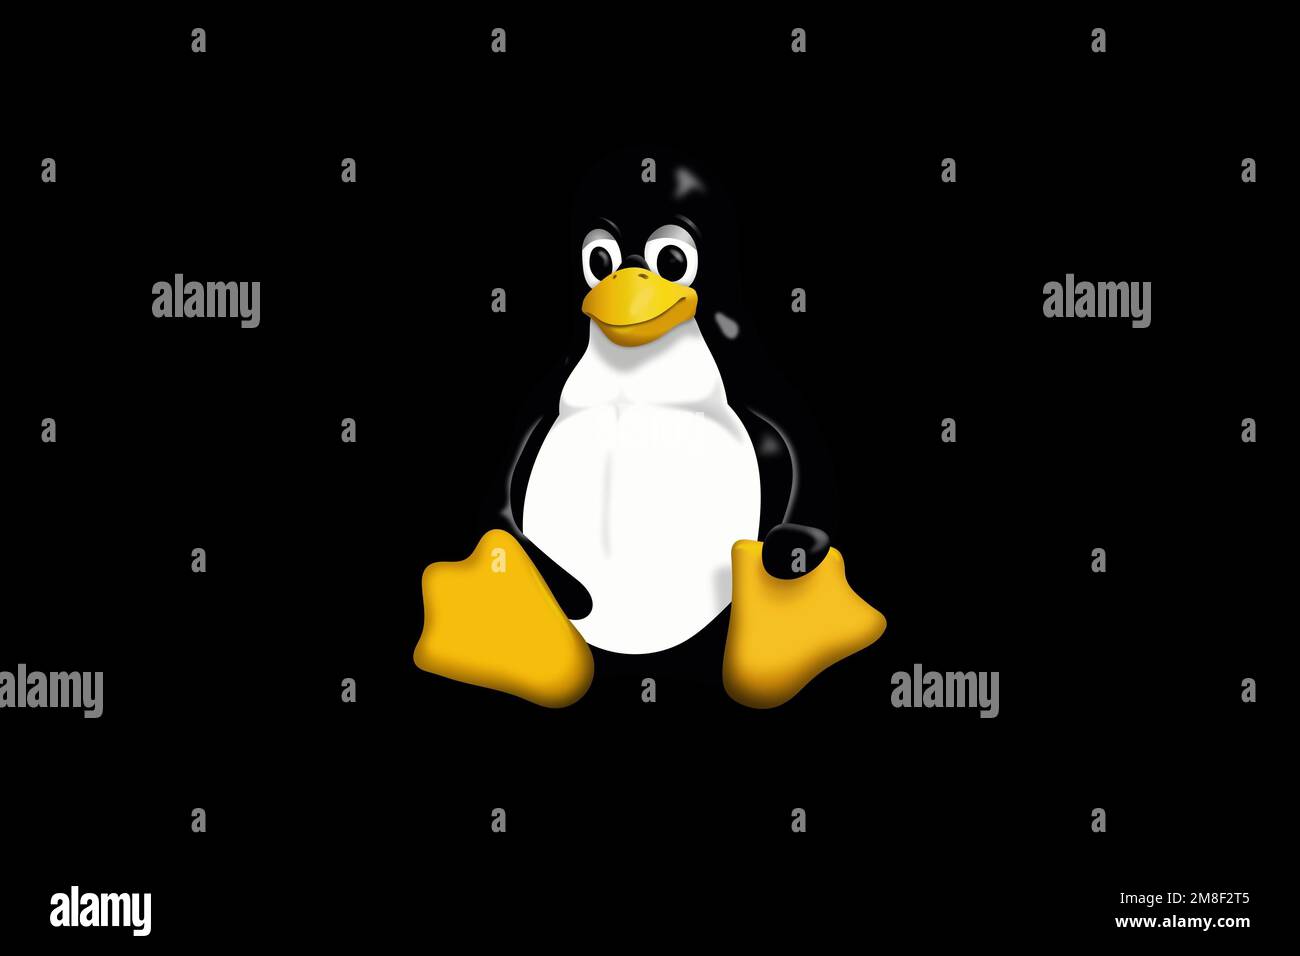 Linux, Logo, Black background Stock Photo